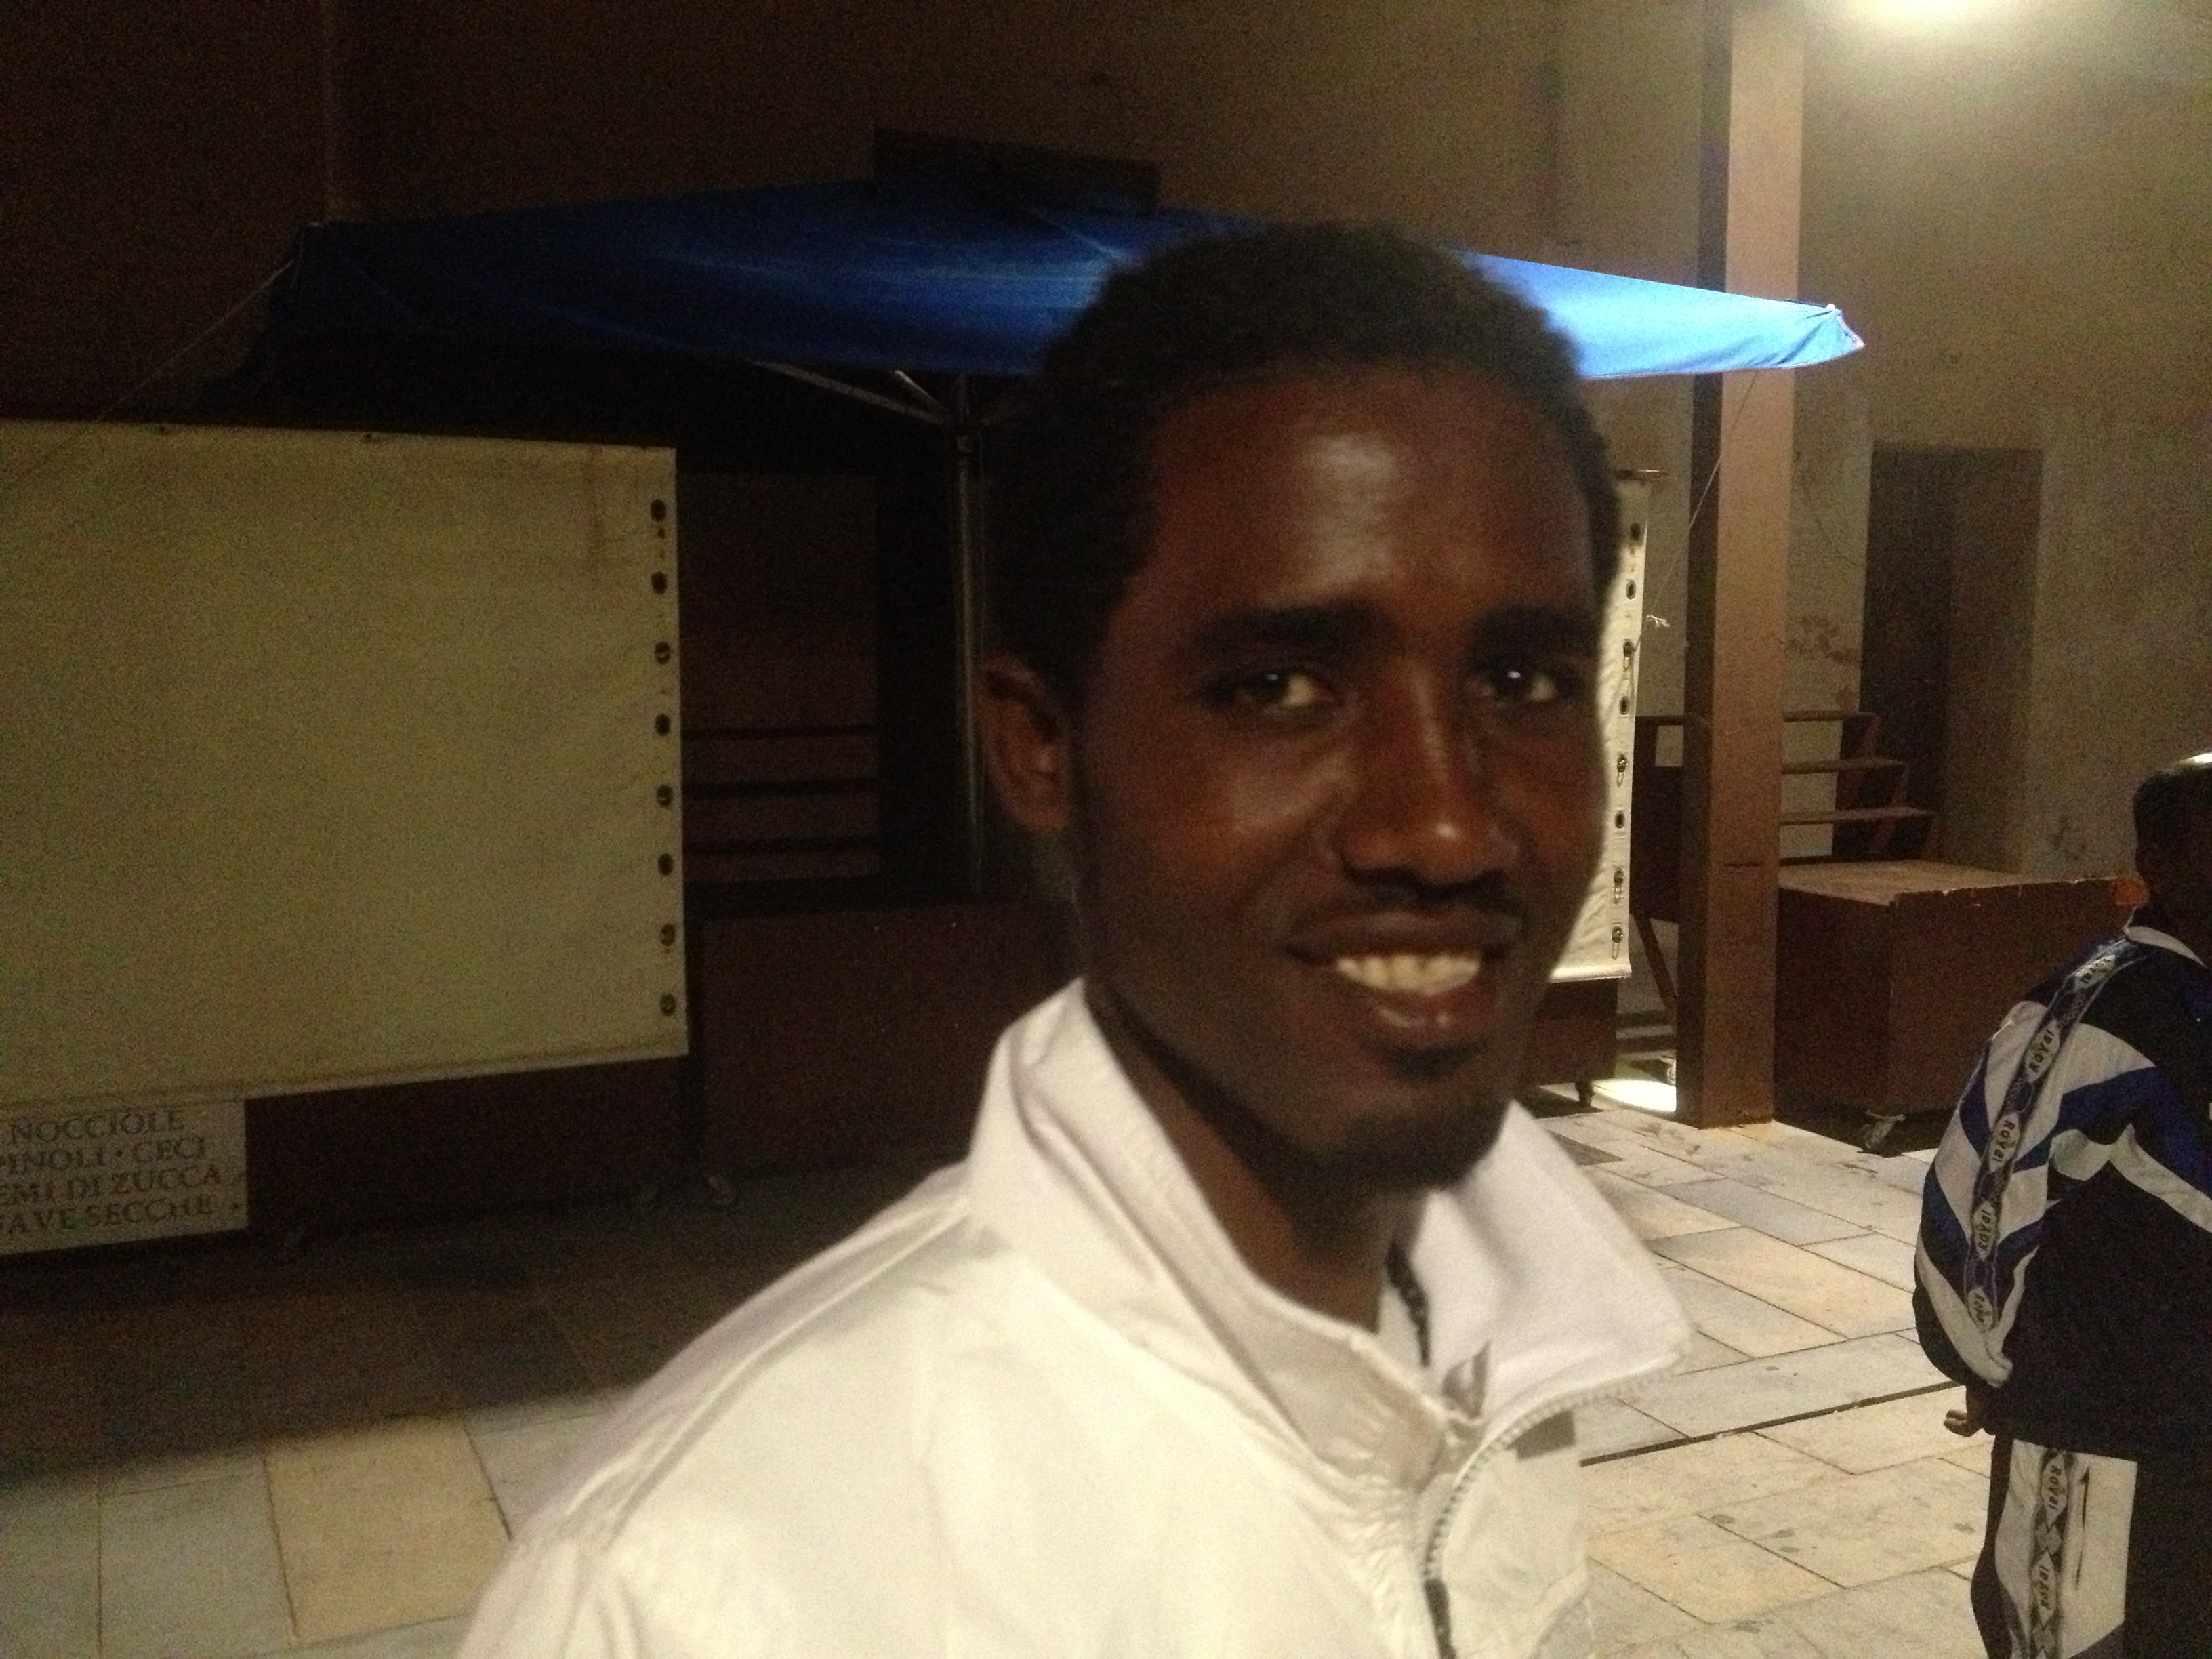 Zerit, 28 ans, originaire d'Erythrée, survivant du naufrage au large de Lampedusa. Le 19 octobre 2013. Photo : François Dufour